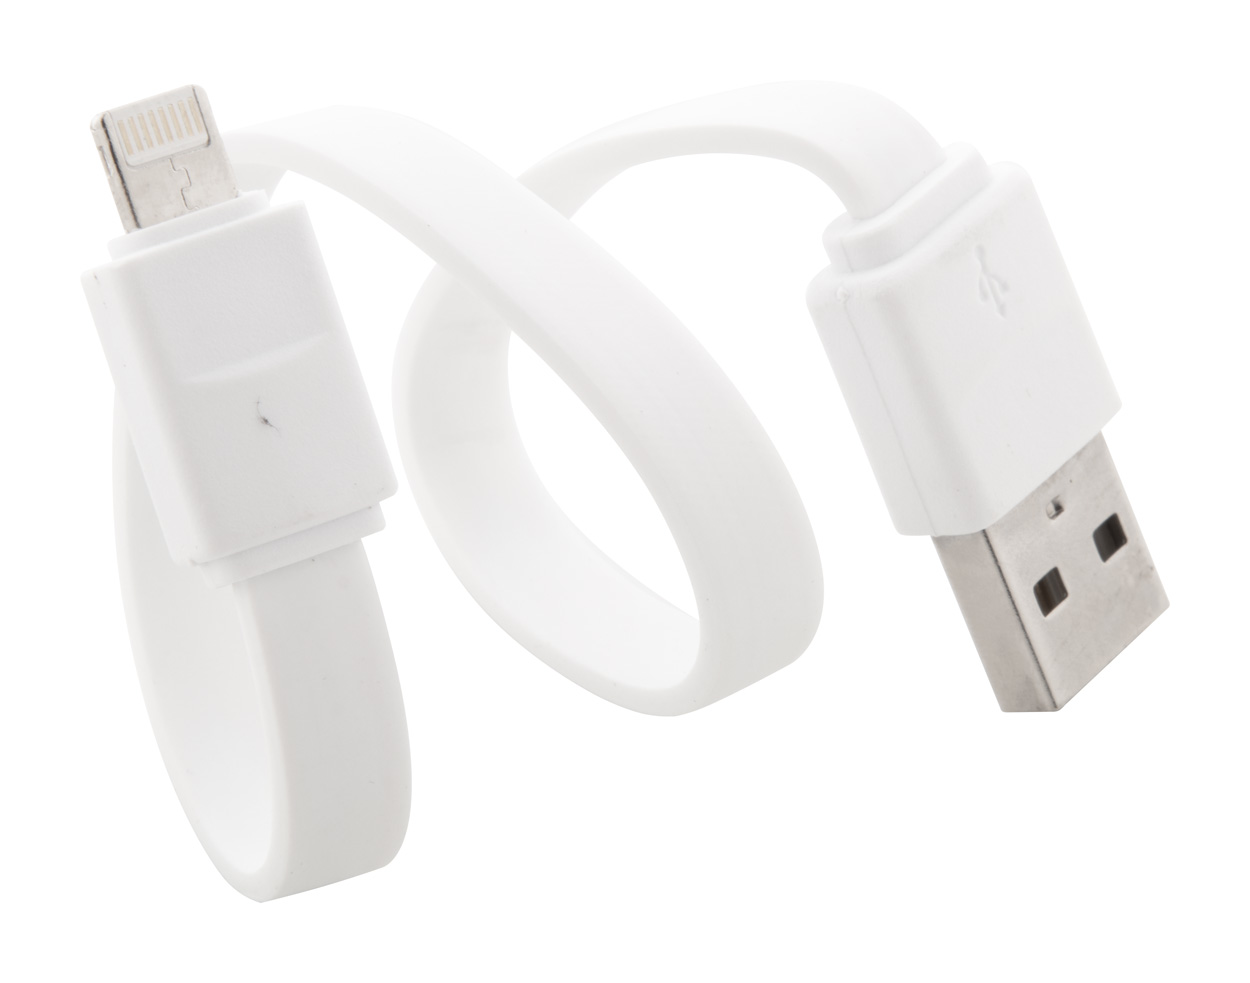 Promo Stash, USB kabel za punjenje s micro USB i Lightning priključcima u plastičnoj kutiji